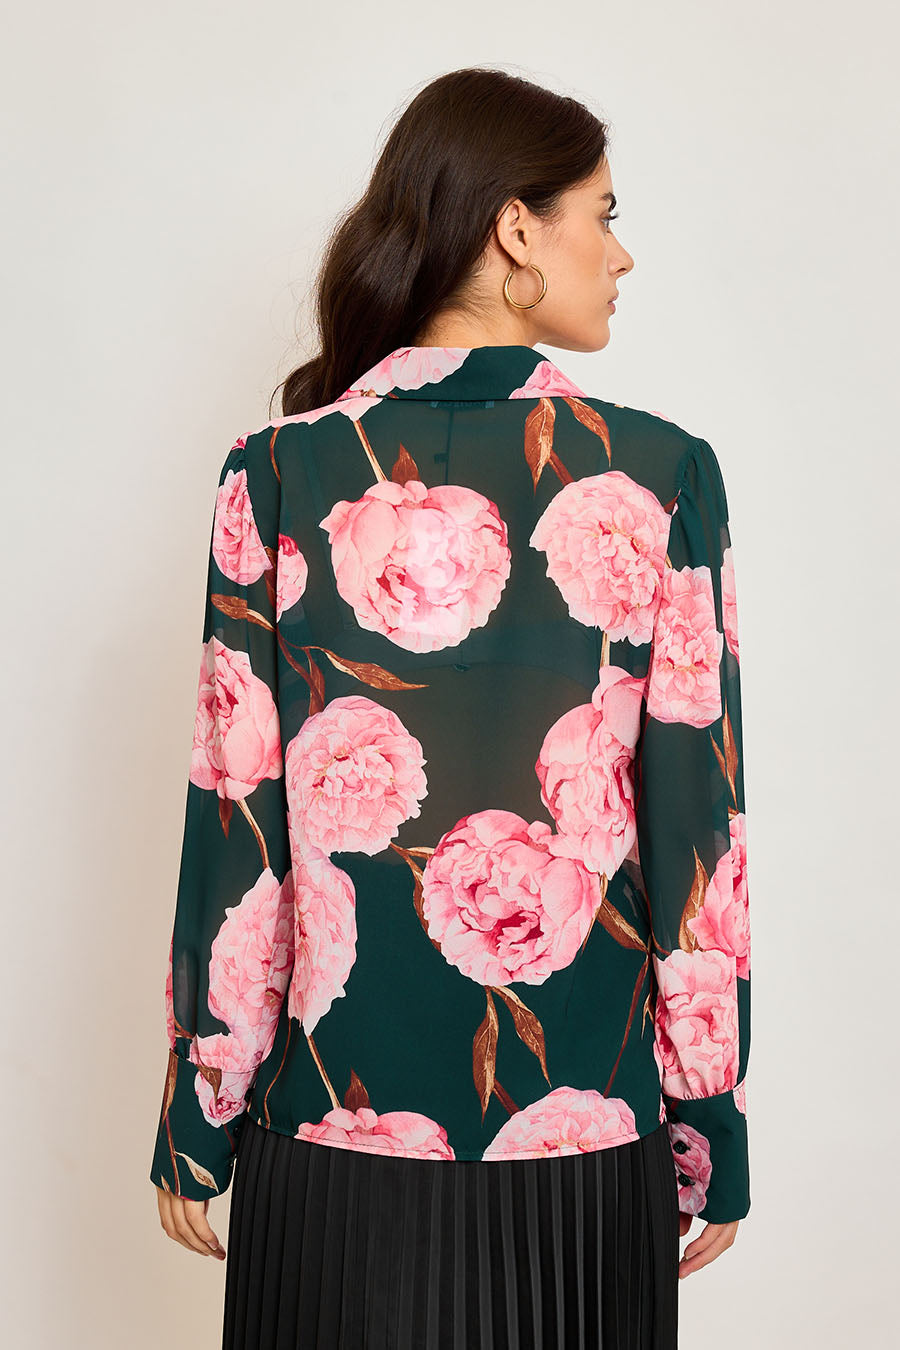 Γυναικείο πουκάμισο Kateryna, Ροζ/Πράσινο 3